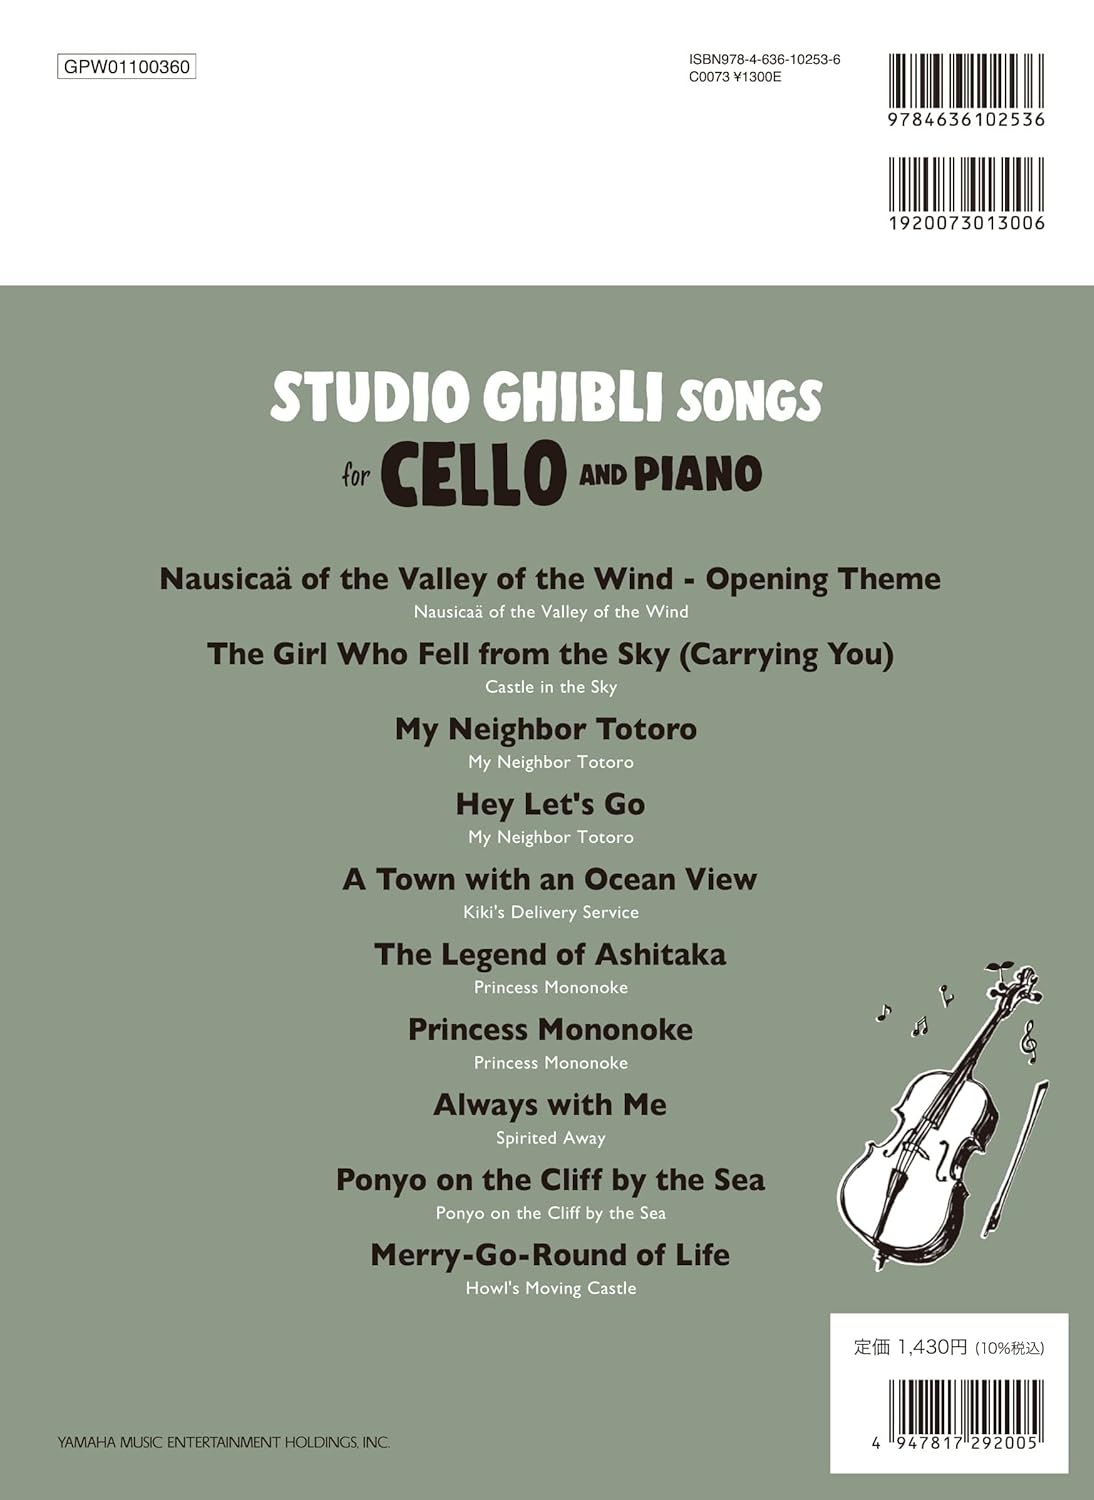 Studio Ghibli Songs for Cello & Piano